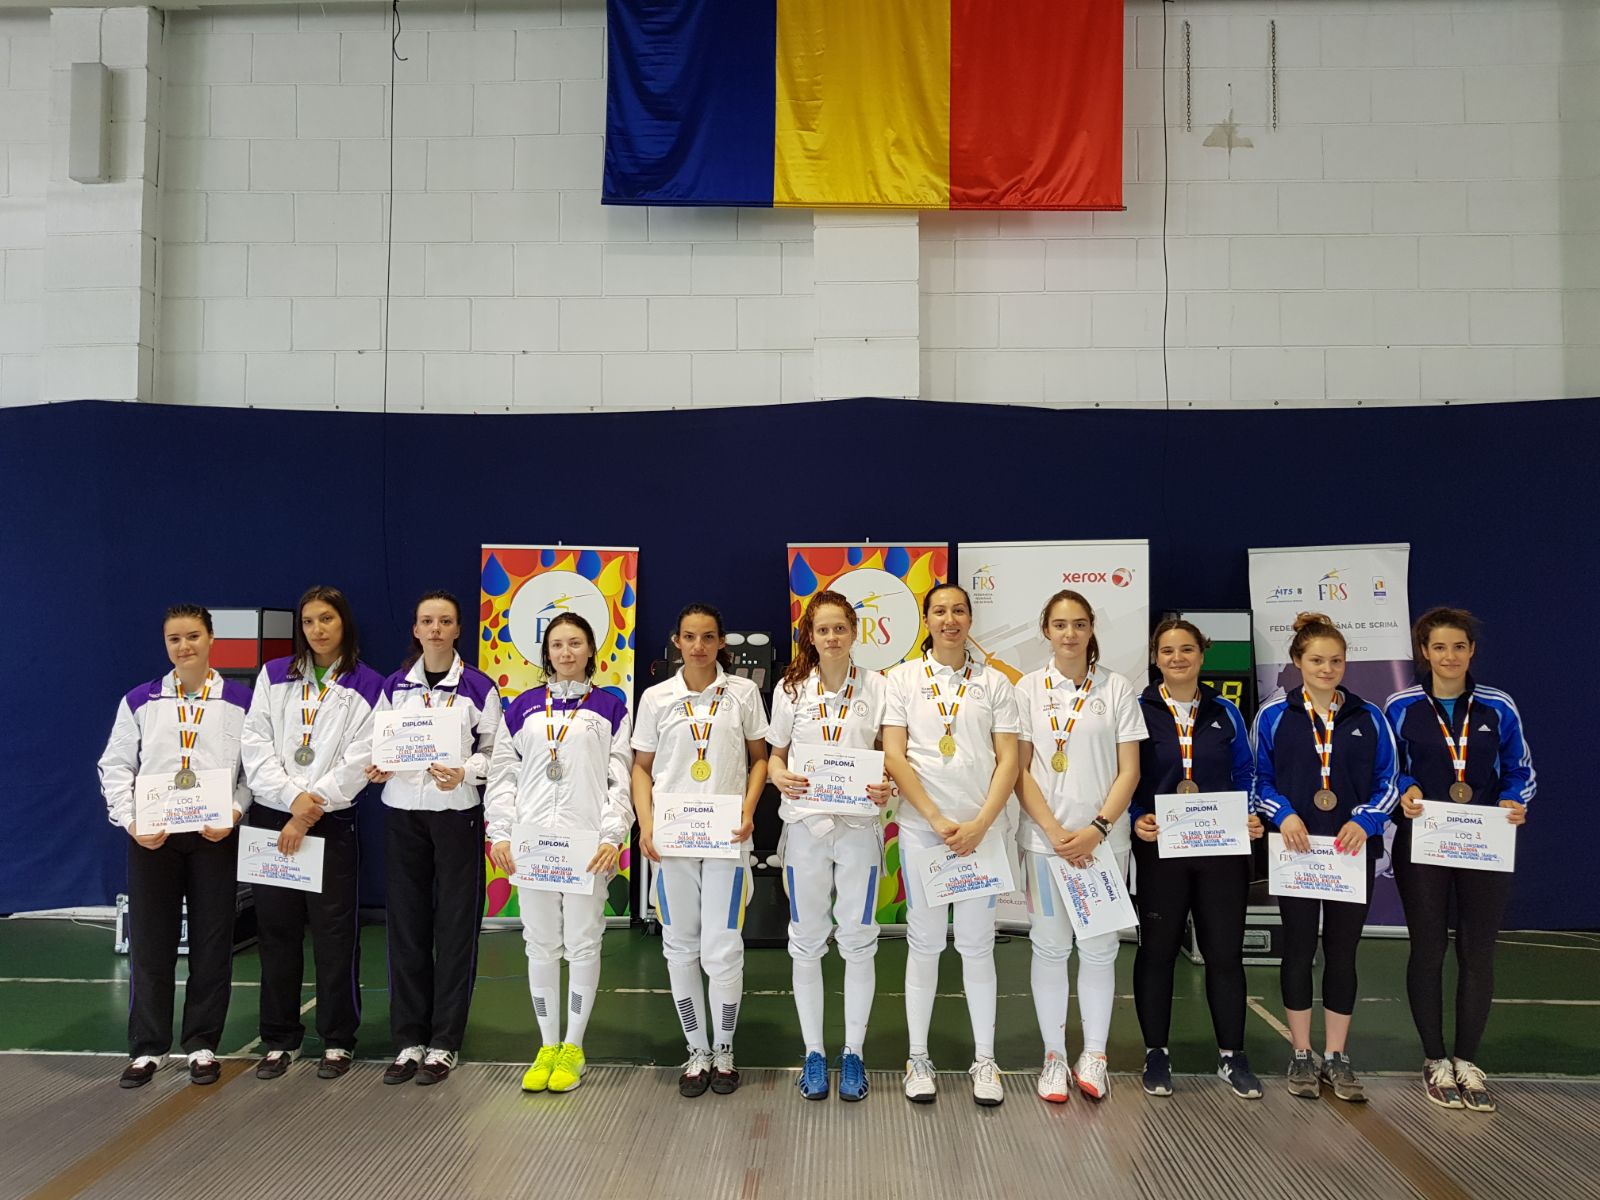 CSA Steaua a câștigat Campionatul Național de floretă seniori de la București, ediția 2018, în proba feminină pe echipe